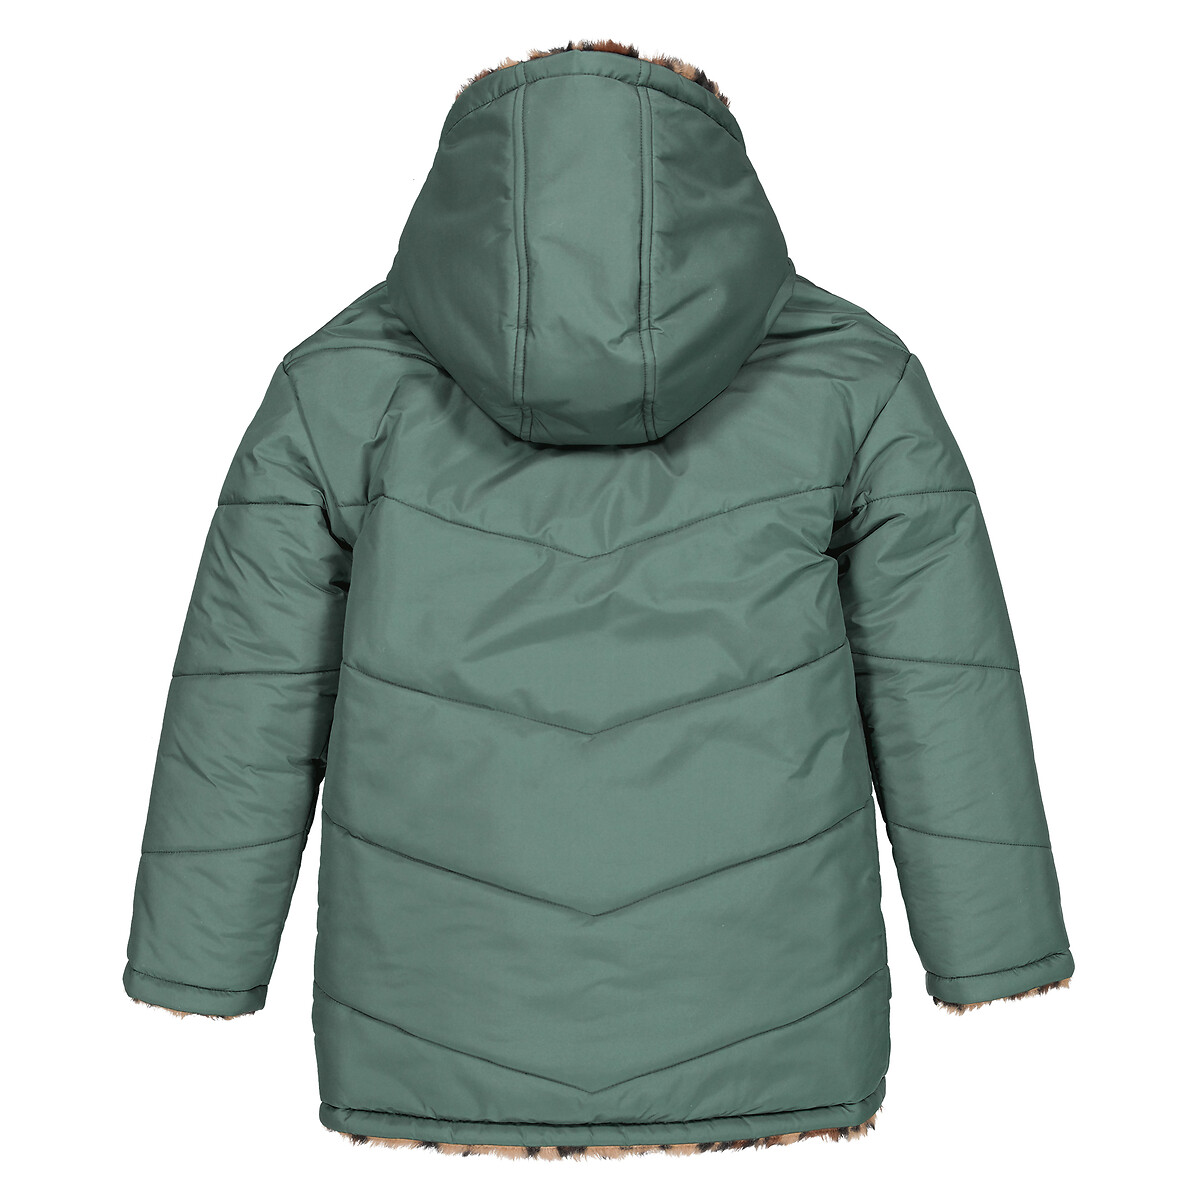 Куртка Стеганая утепленная двухсторонняя с капюшоном 4 года - 102 см зеленый LaRedoute, размер 4 года - 102 см - фото 4